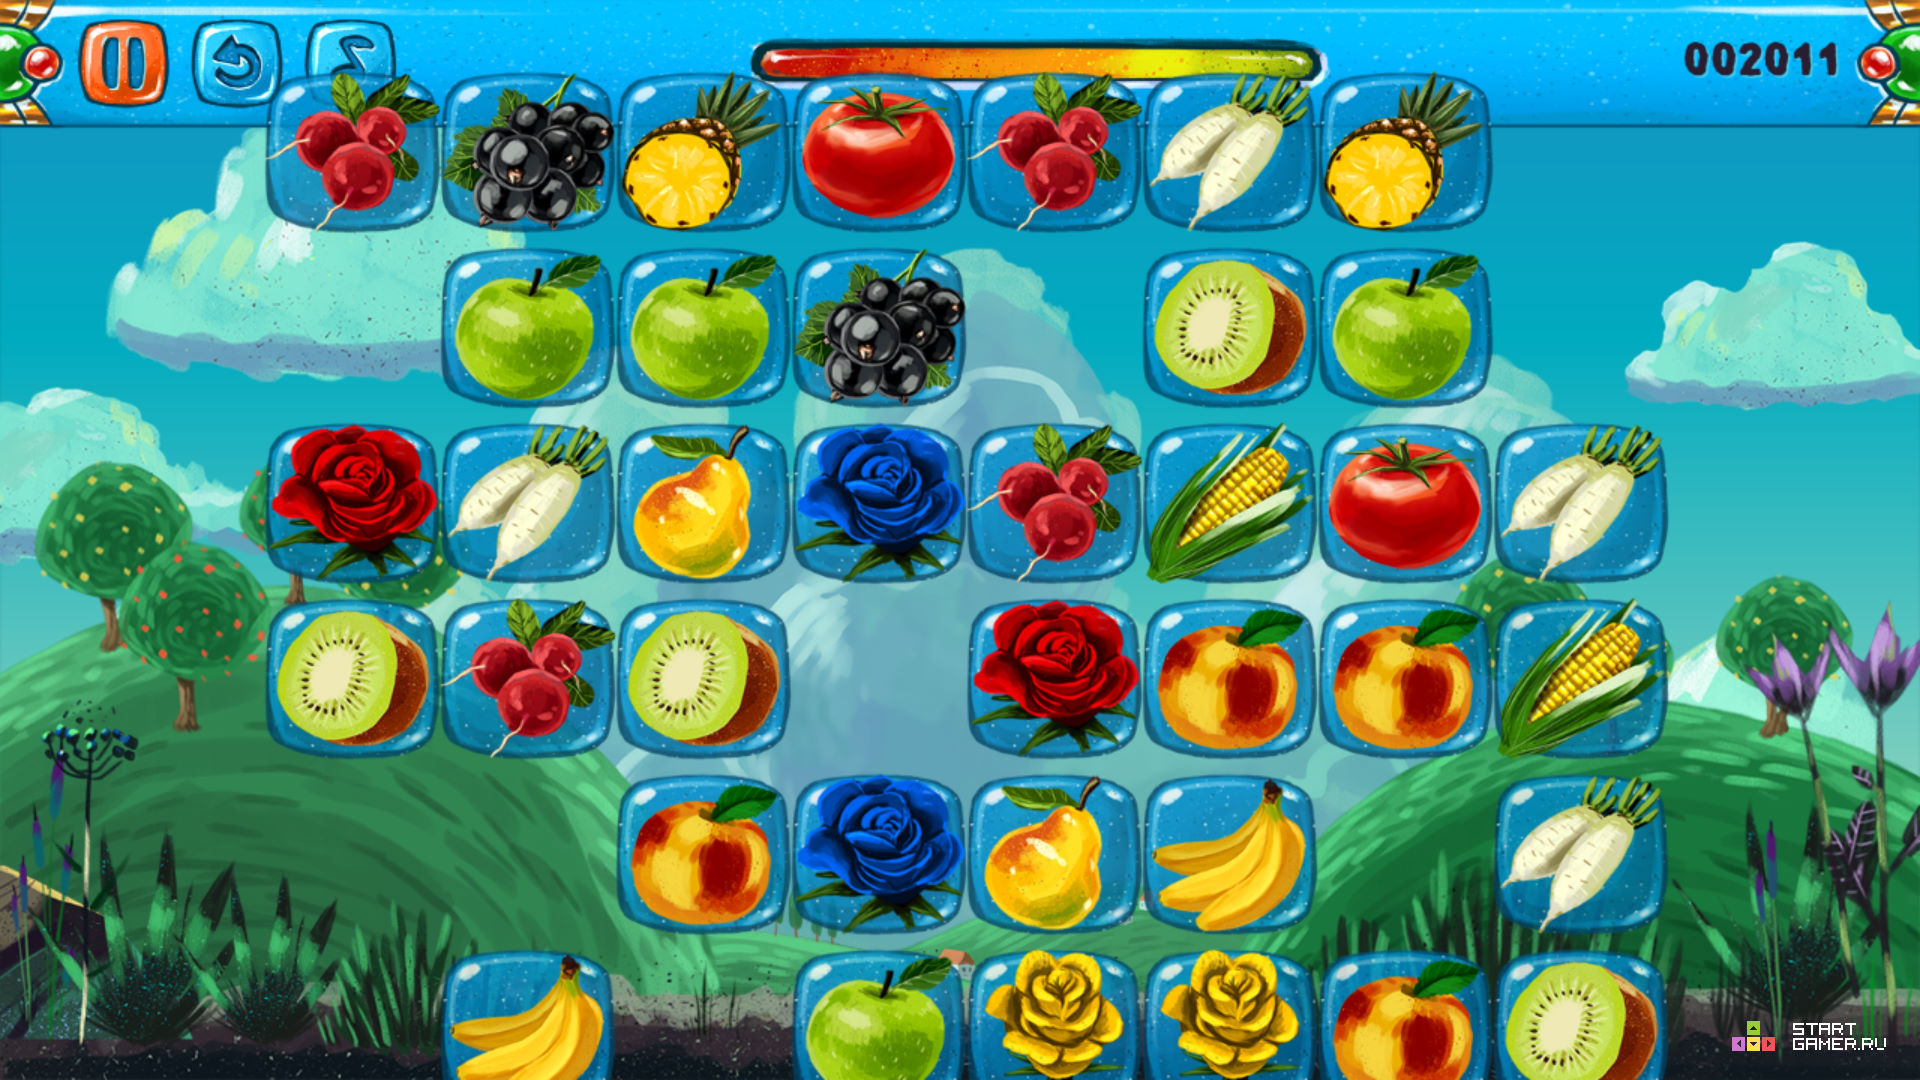 Все фрукты их блокс фрукт. Блокс фруит. В2 фрукты Блокс Фрут. Fruit connect игра. Маджонг Соедини фрукты.